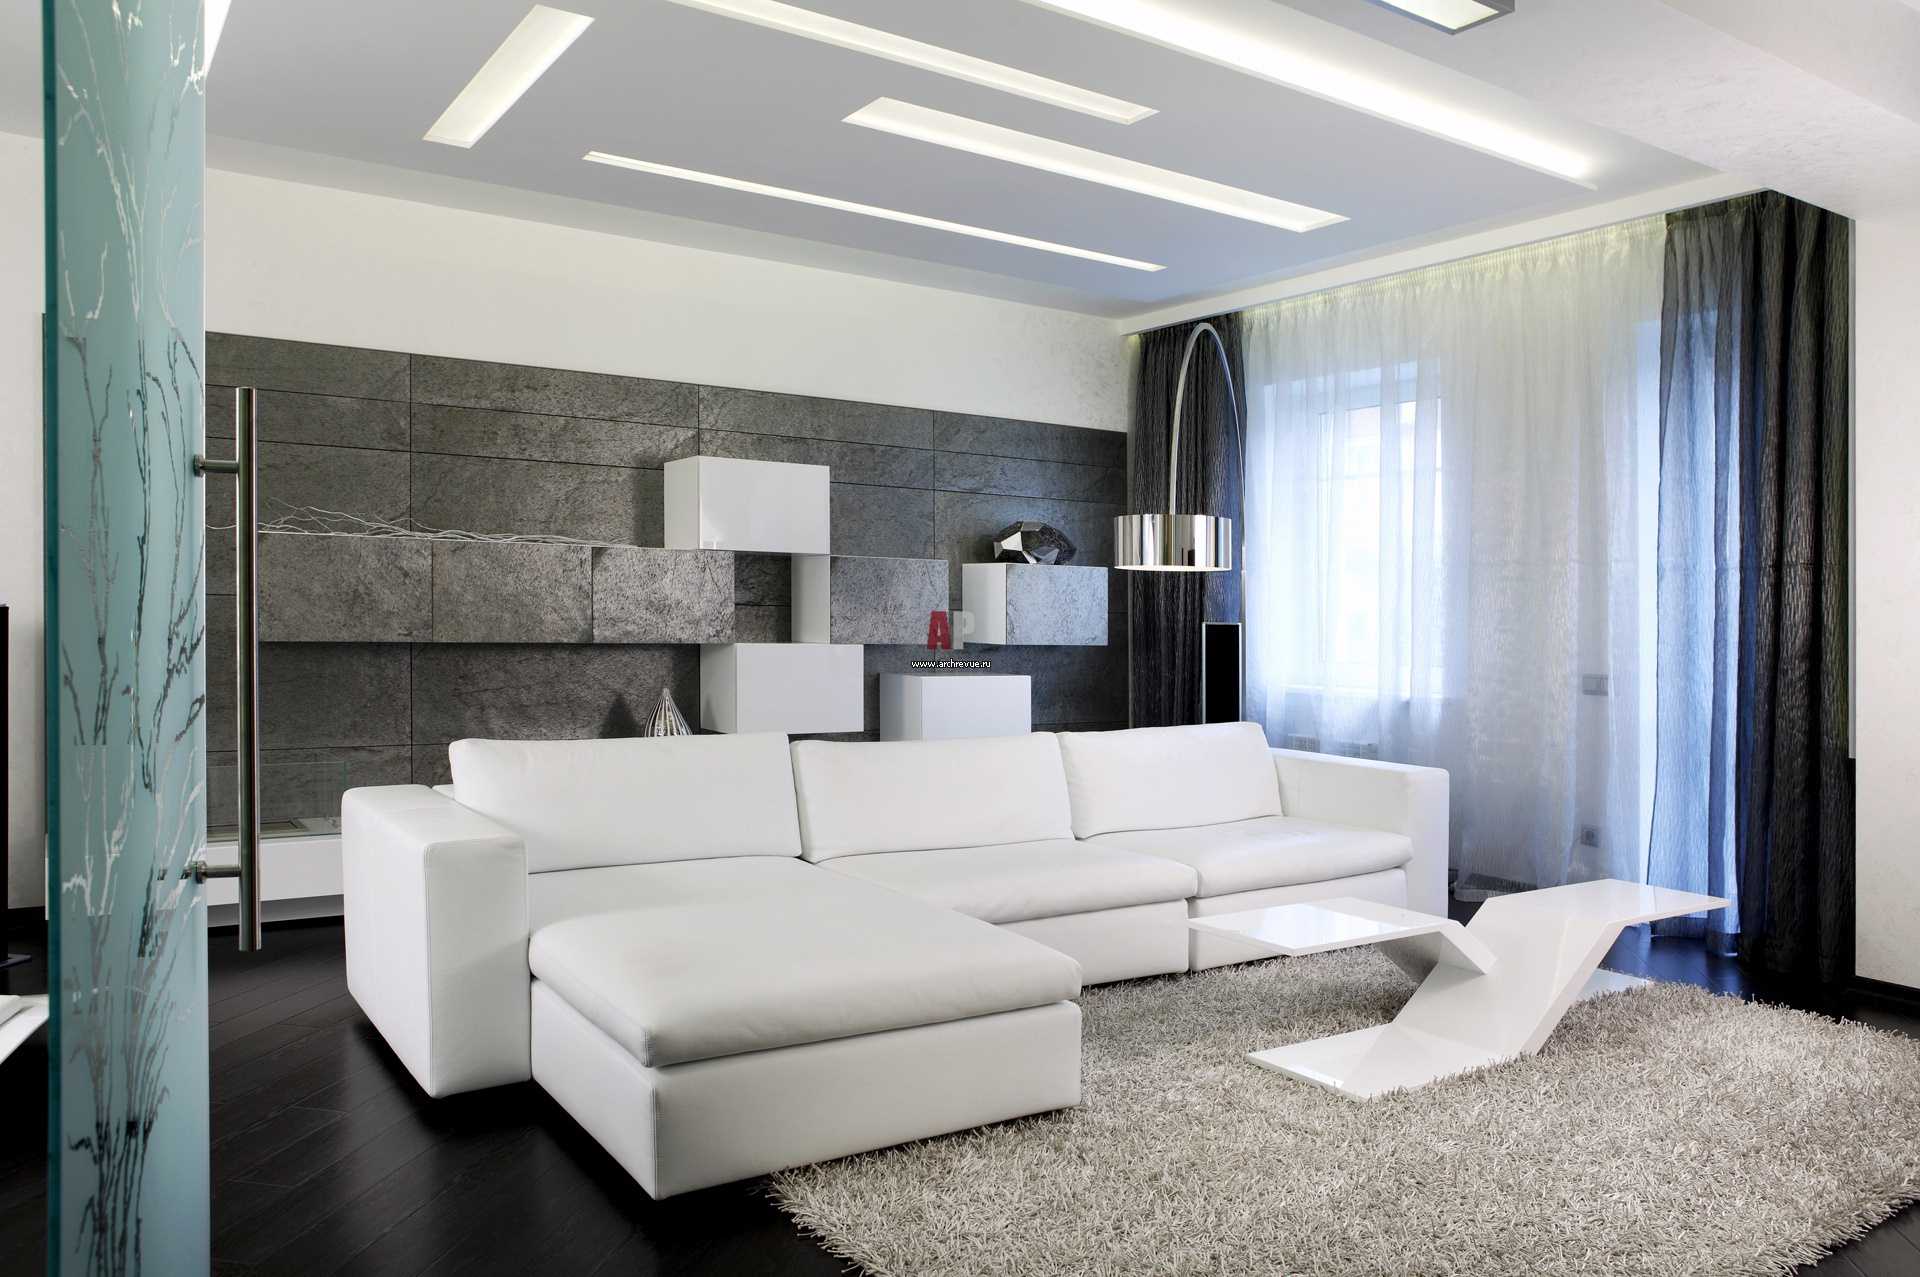 mobili bianchi chiari nel design del corridoio